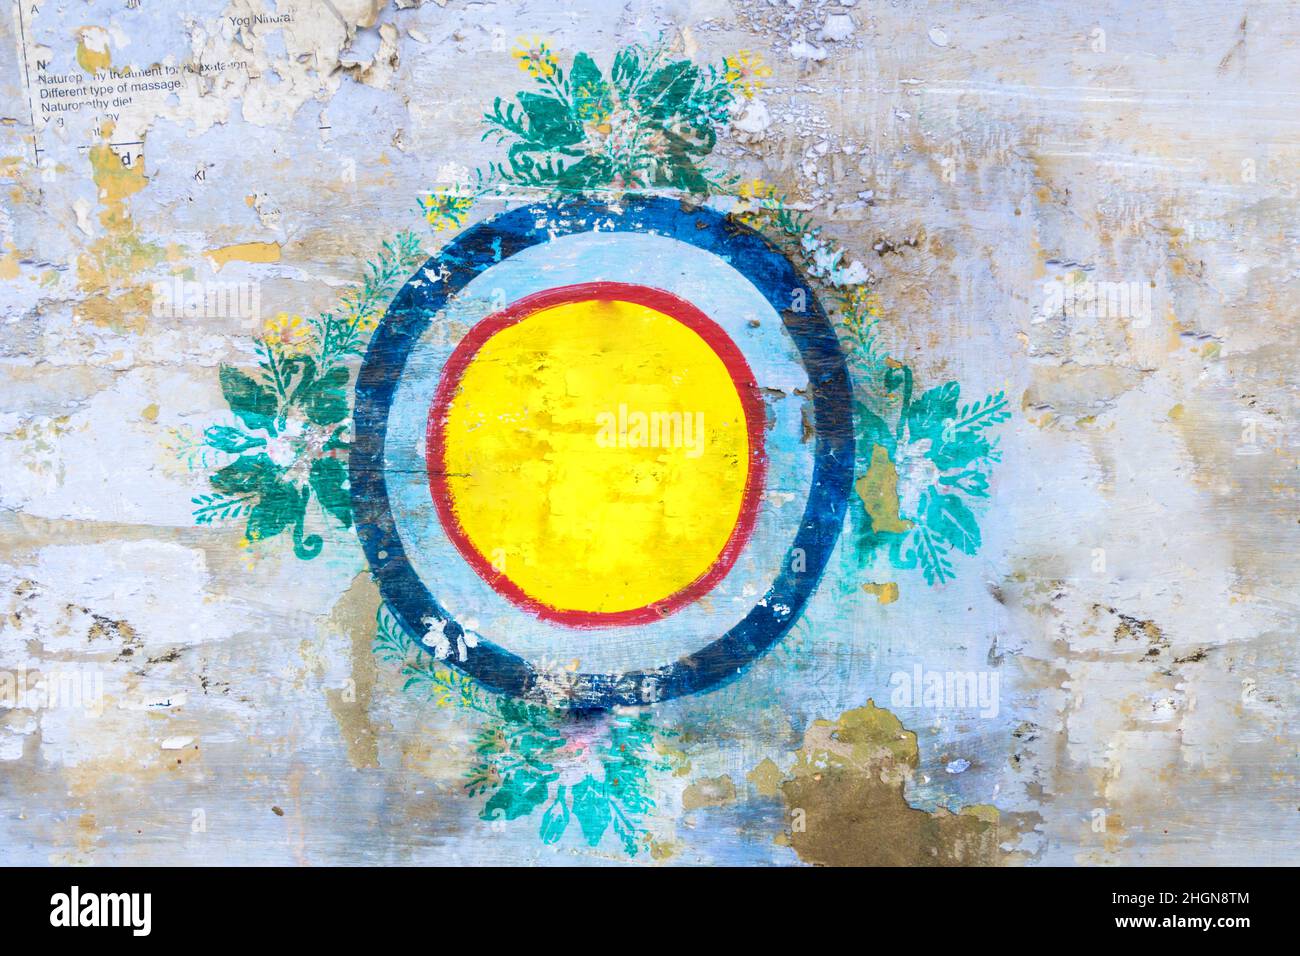 Diversi cerchi colorati interbloccanti dipinti a mano su una vecchia parete in stile grunge Foto Stock